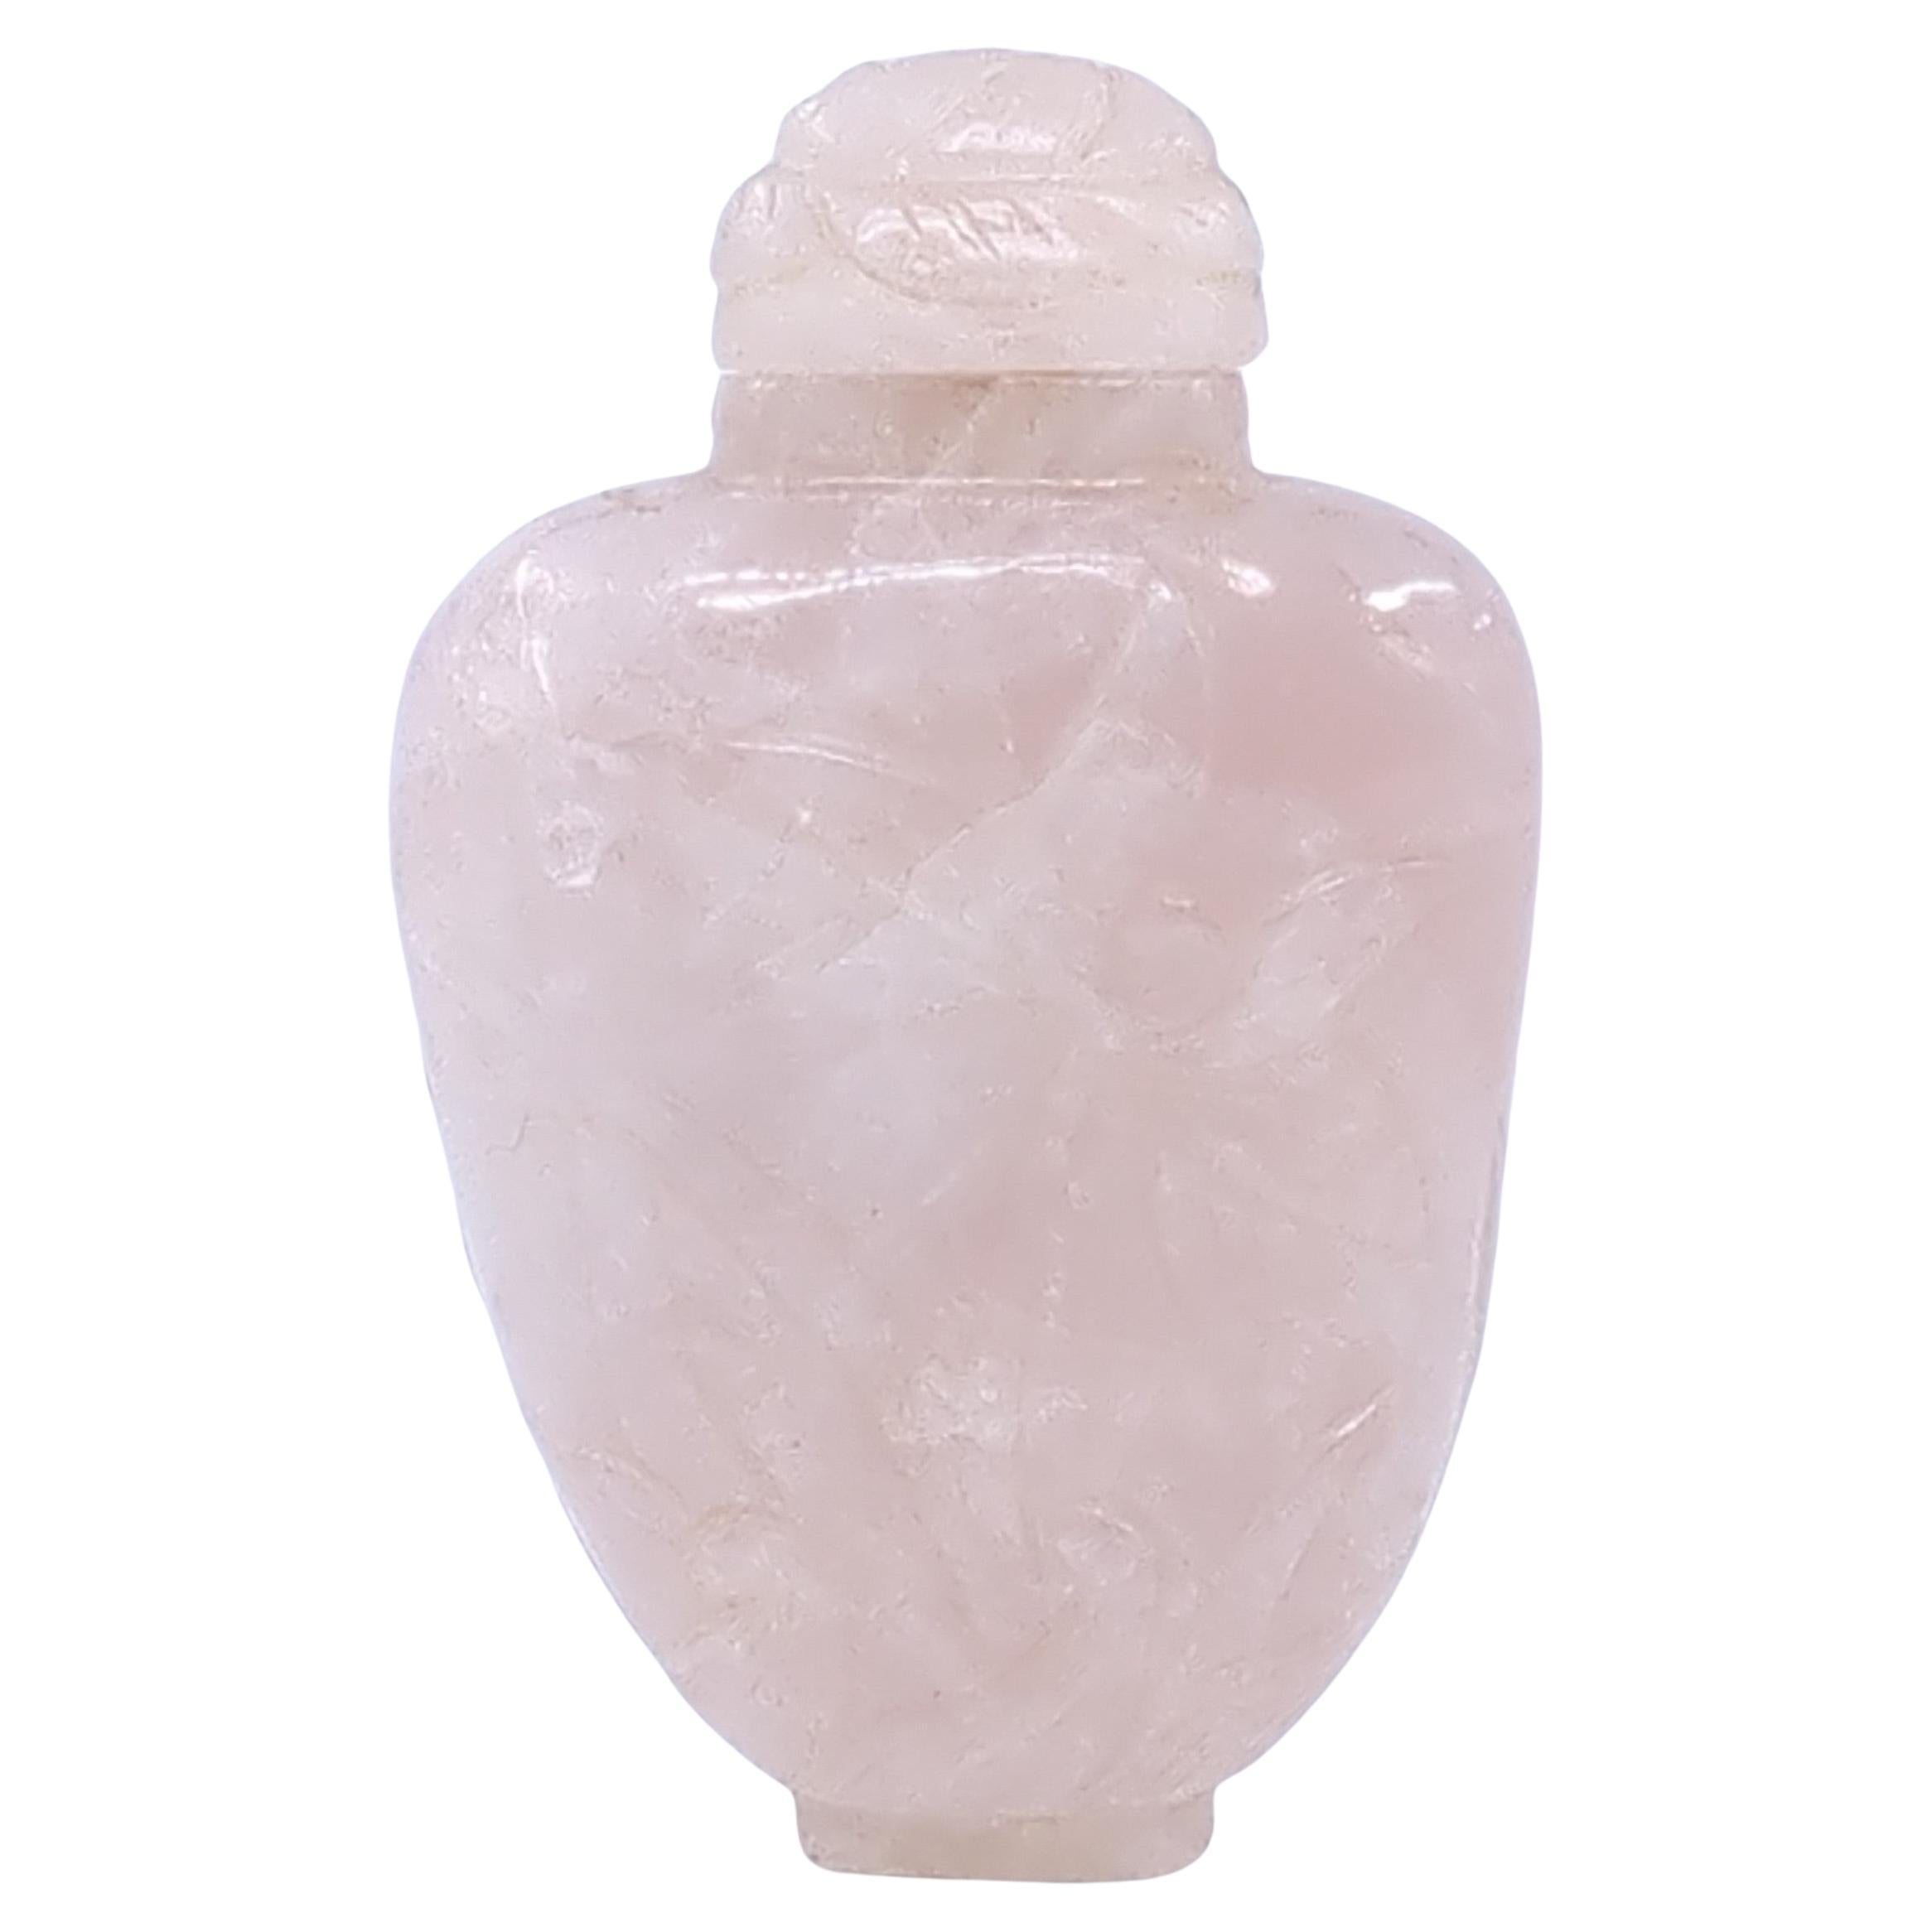 Ce flacon de tabac à priser en quartz rose sculpté du milieu du XXe siècle, période 5/6/7, est un objet délicat et exquis qui reflète l'esthétique raffinée et l'habileté de l'artisanat de l'époque. Le flacon est taillé dans un seul morceau de quartz